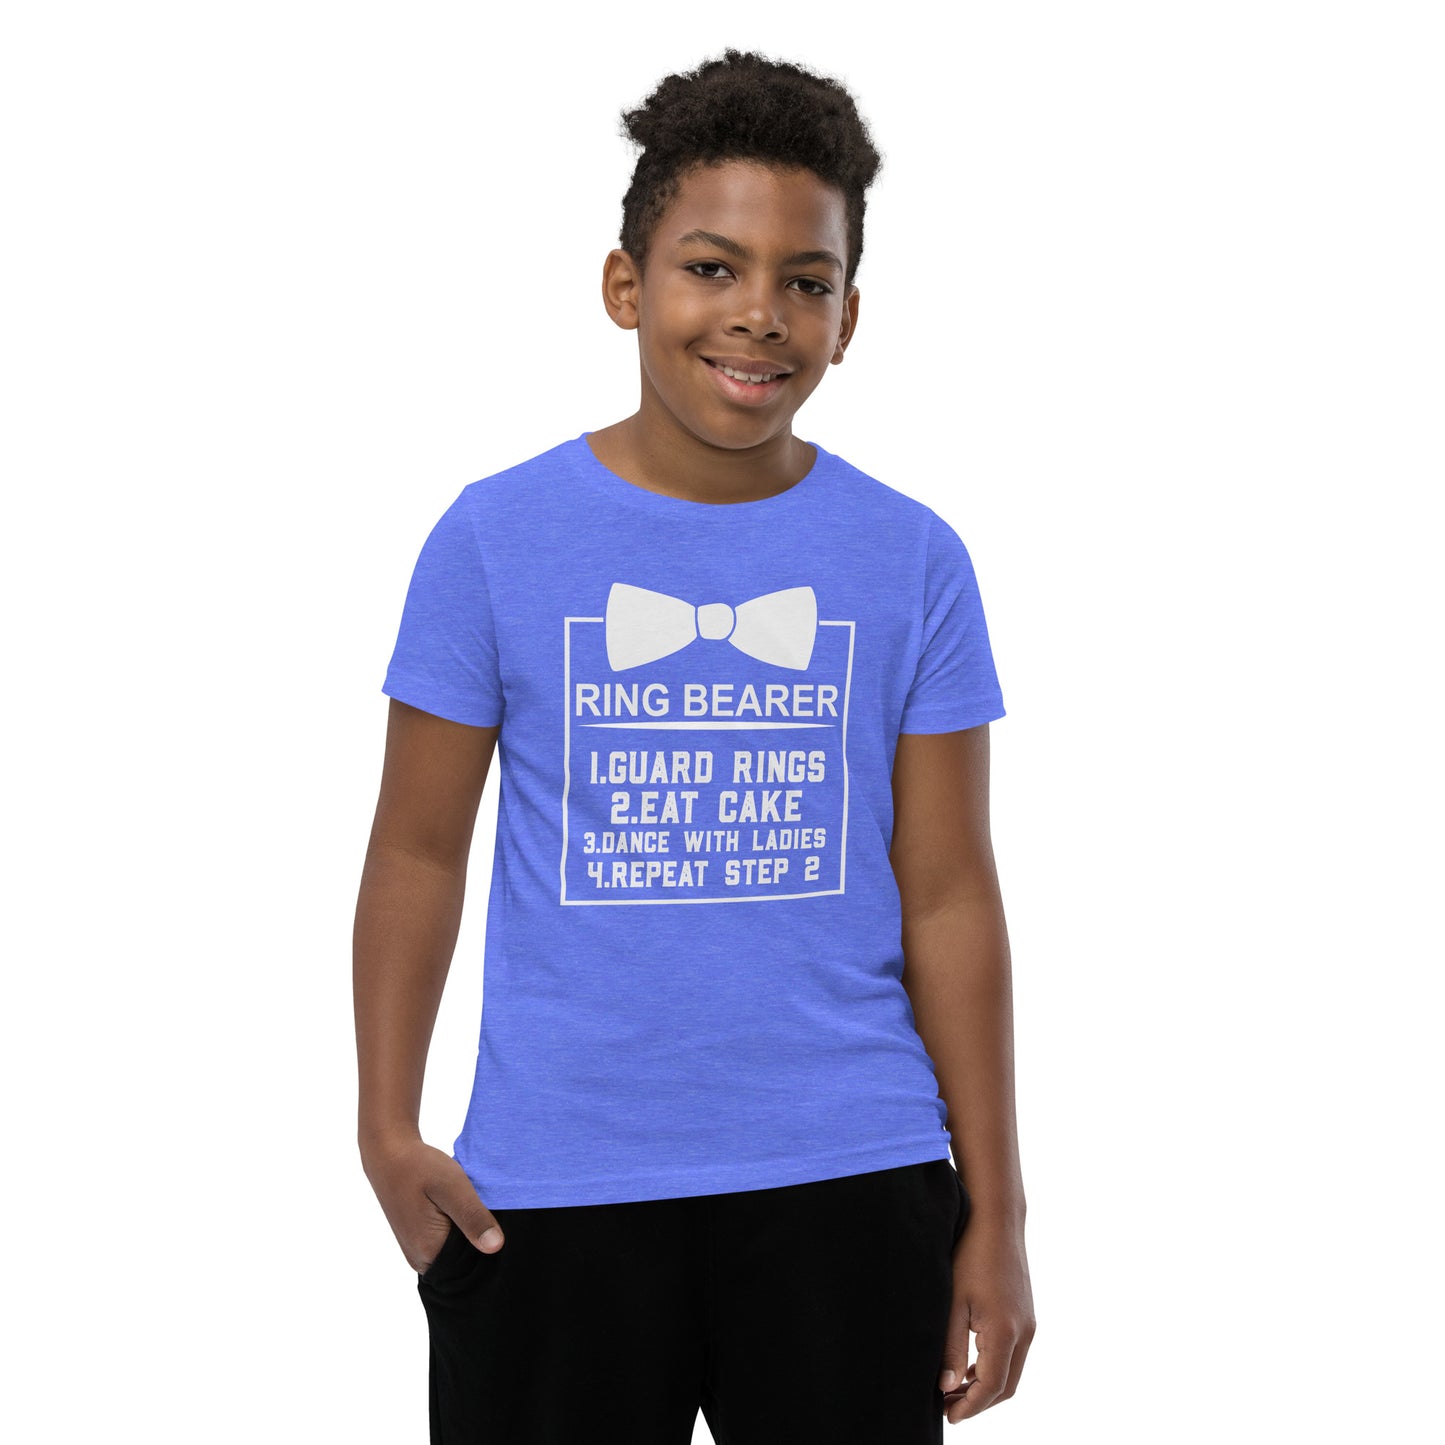 "Ring Bearer's Duties" Customizable Youth T-Shirt